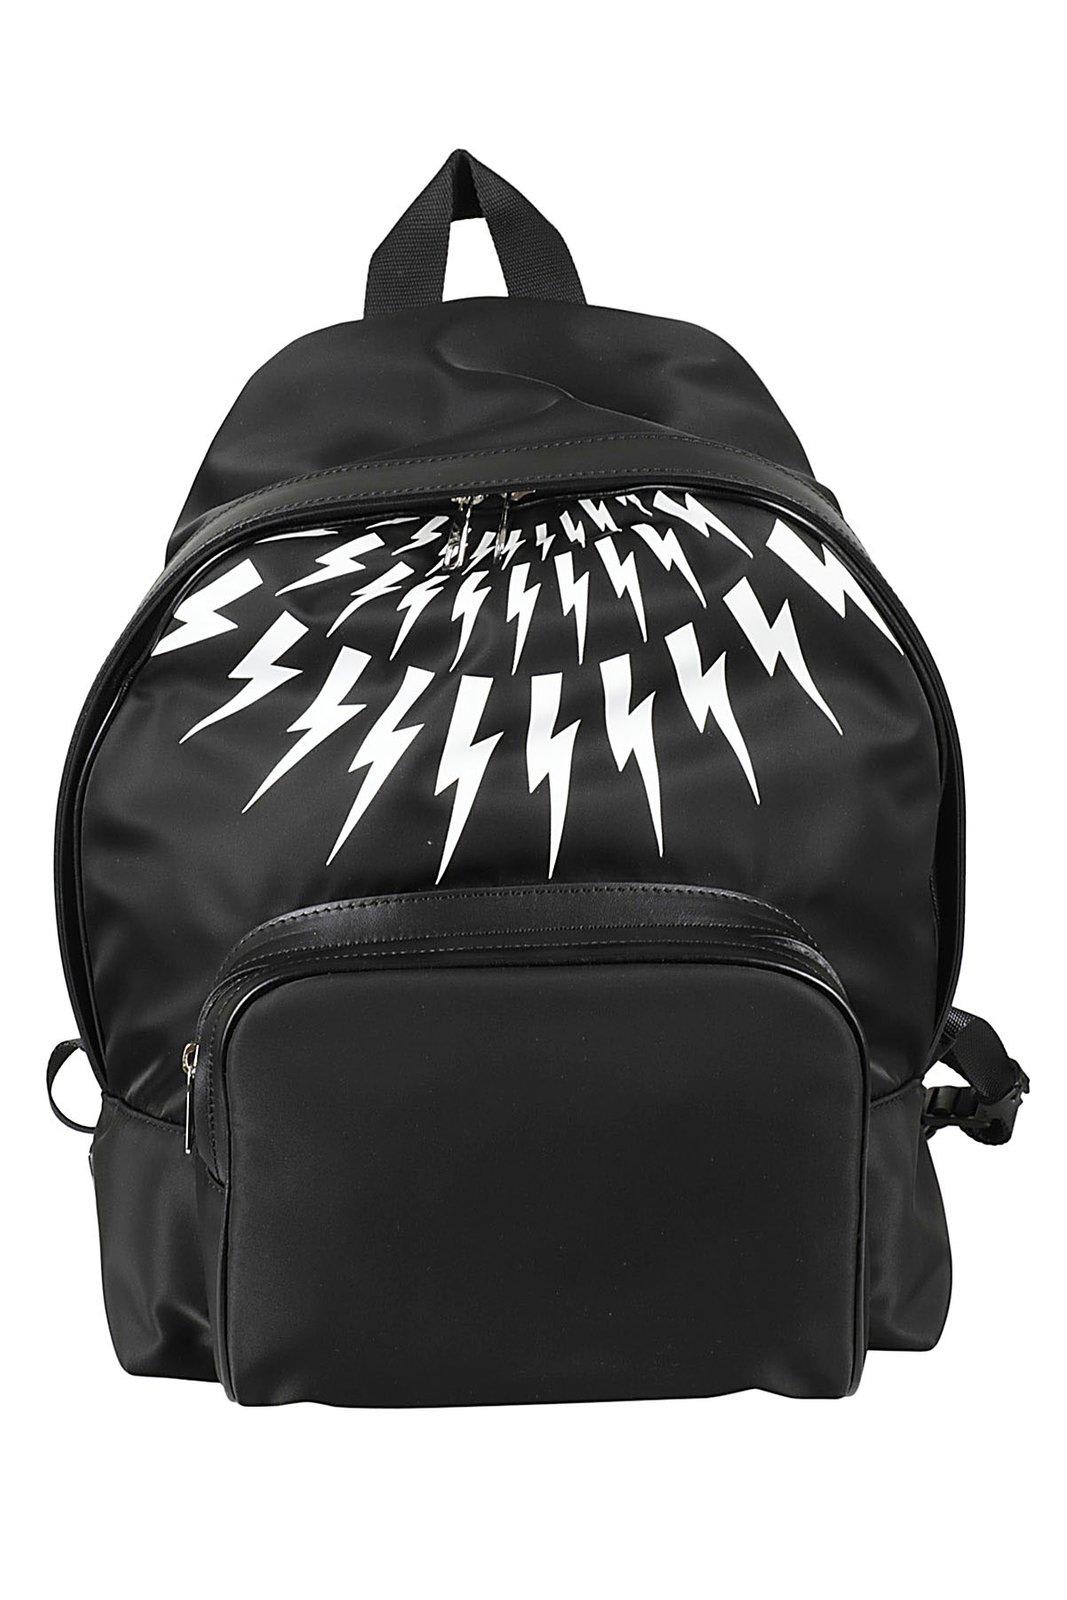 Neil Barrett Thunder Printed Zipped Backpack In Black White